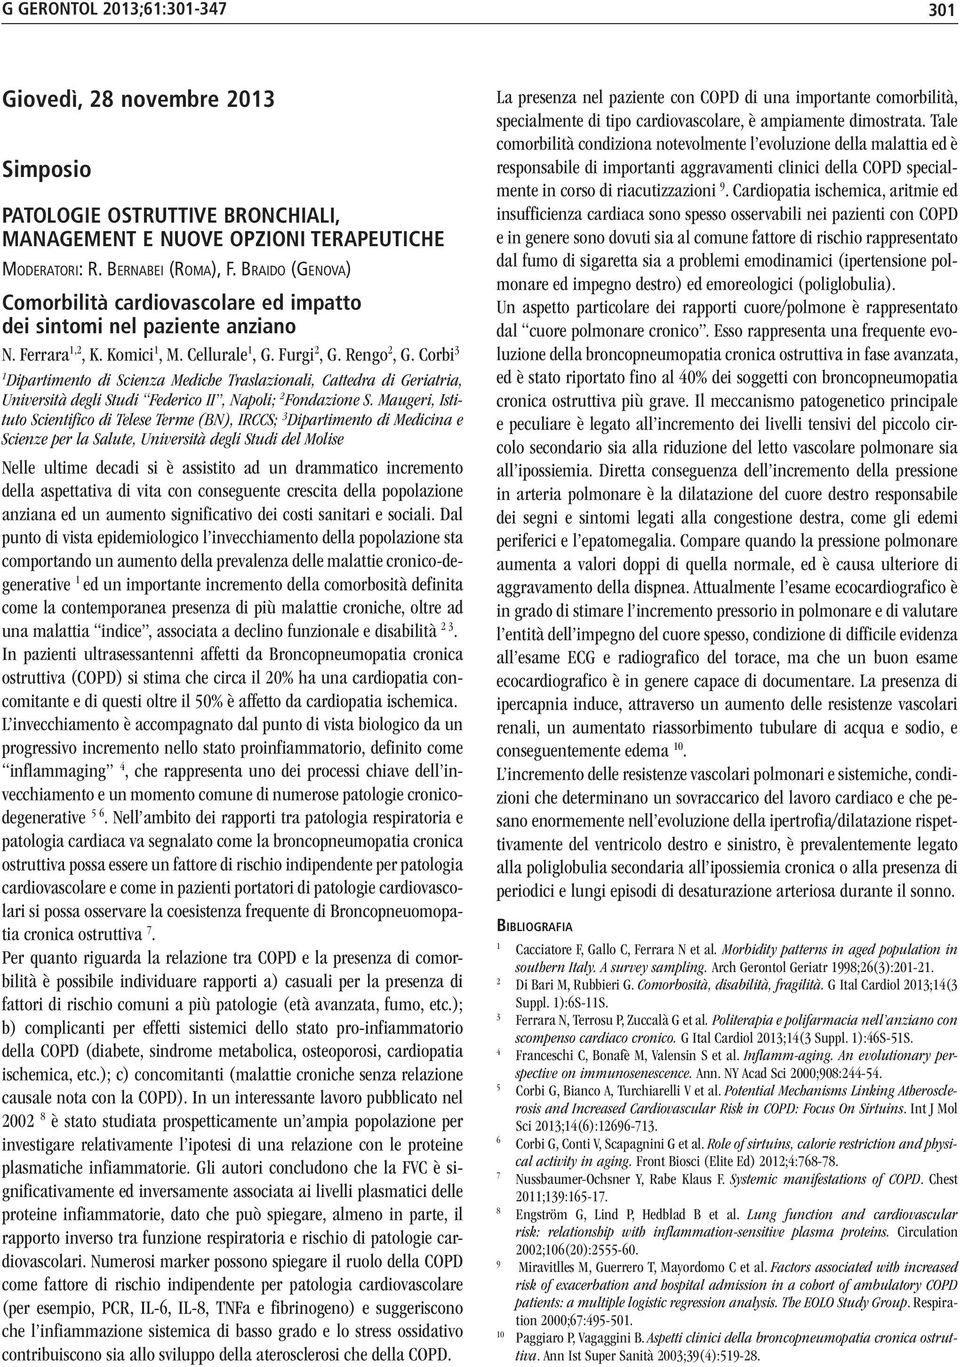 Corbi 3 1 Dipartimento di Scienza Mediche Traslazionali, Cattedra di Geriatria, Università degli Studi Federico II, Napoli; 2 Fondazione S.